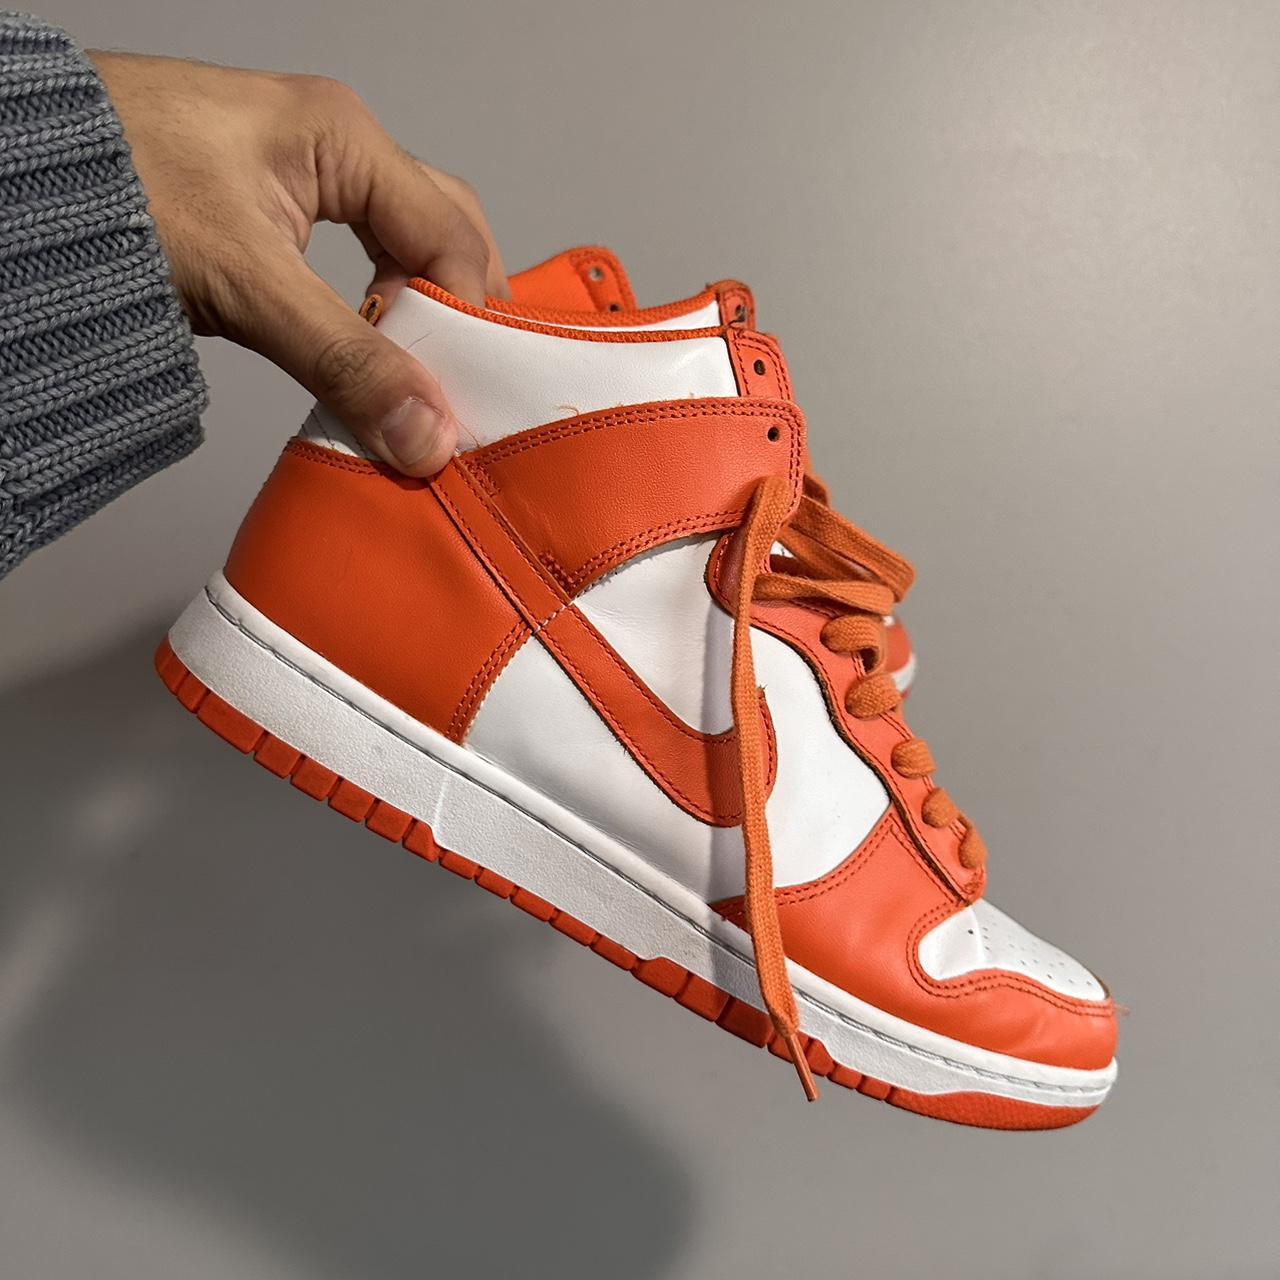 Nike Dunk High Retro Syracuse/Orange Blaze 2021, Size...